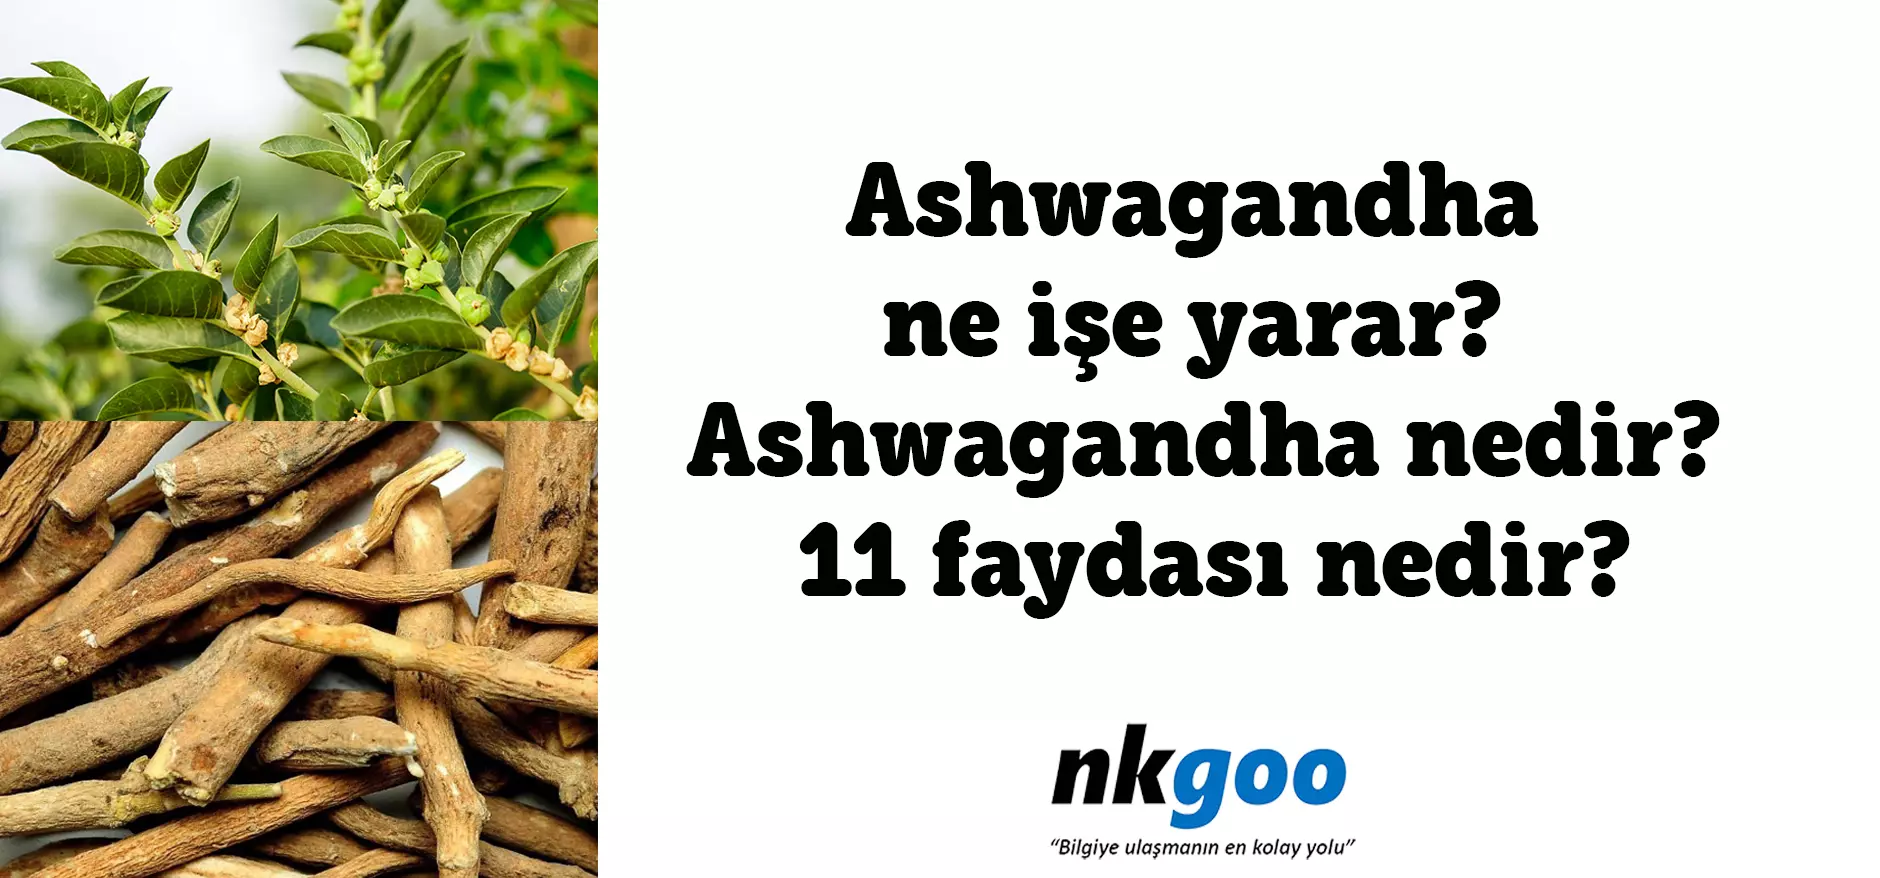 Ashwagandha ne işe yarar? Ashwagandha nedir?11 faydası